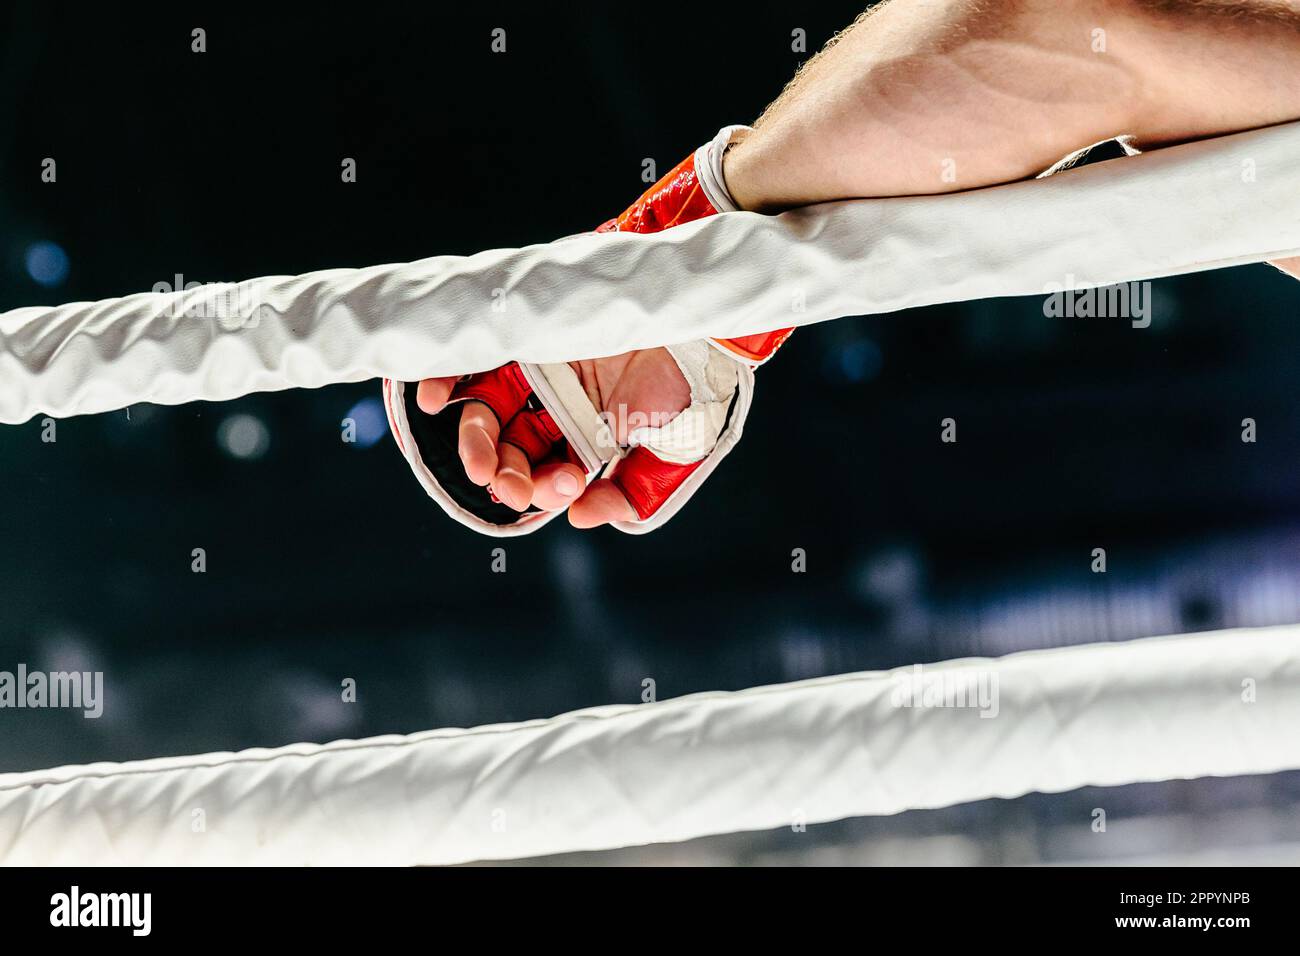 Die Kampfhand in rotem Handschuh liegt auf dem weißen Seilring Stockfoto